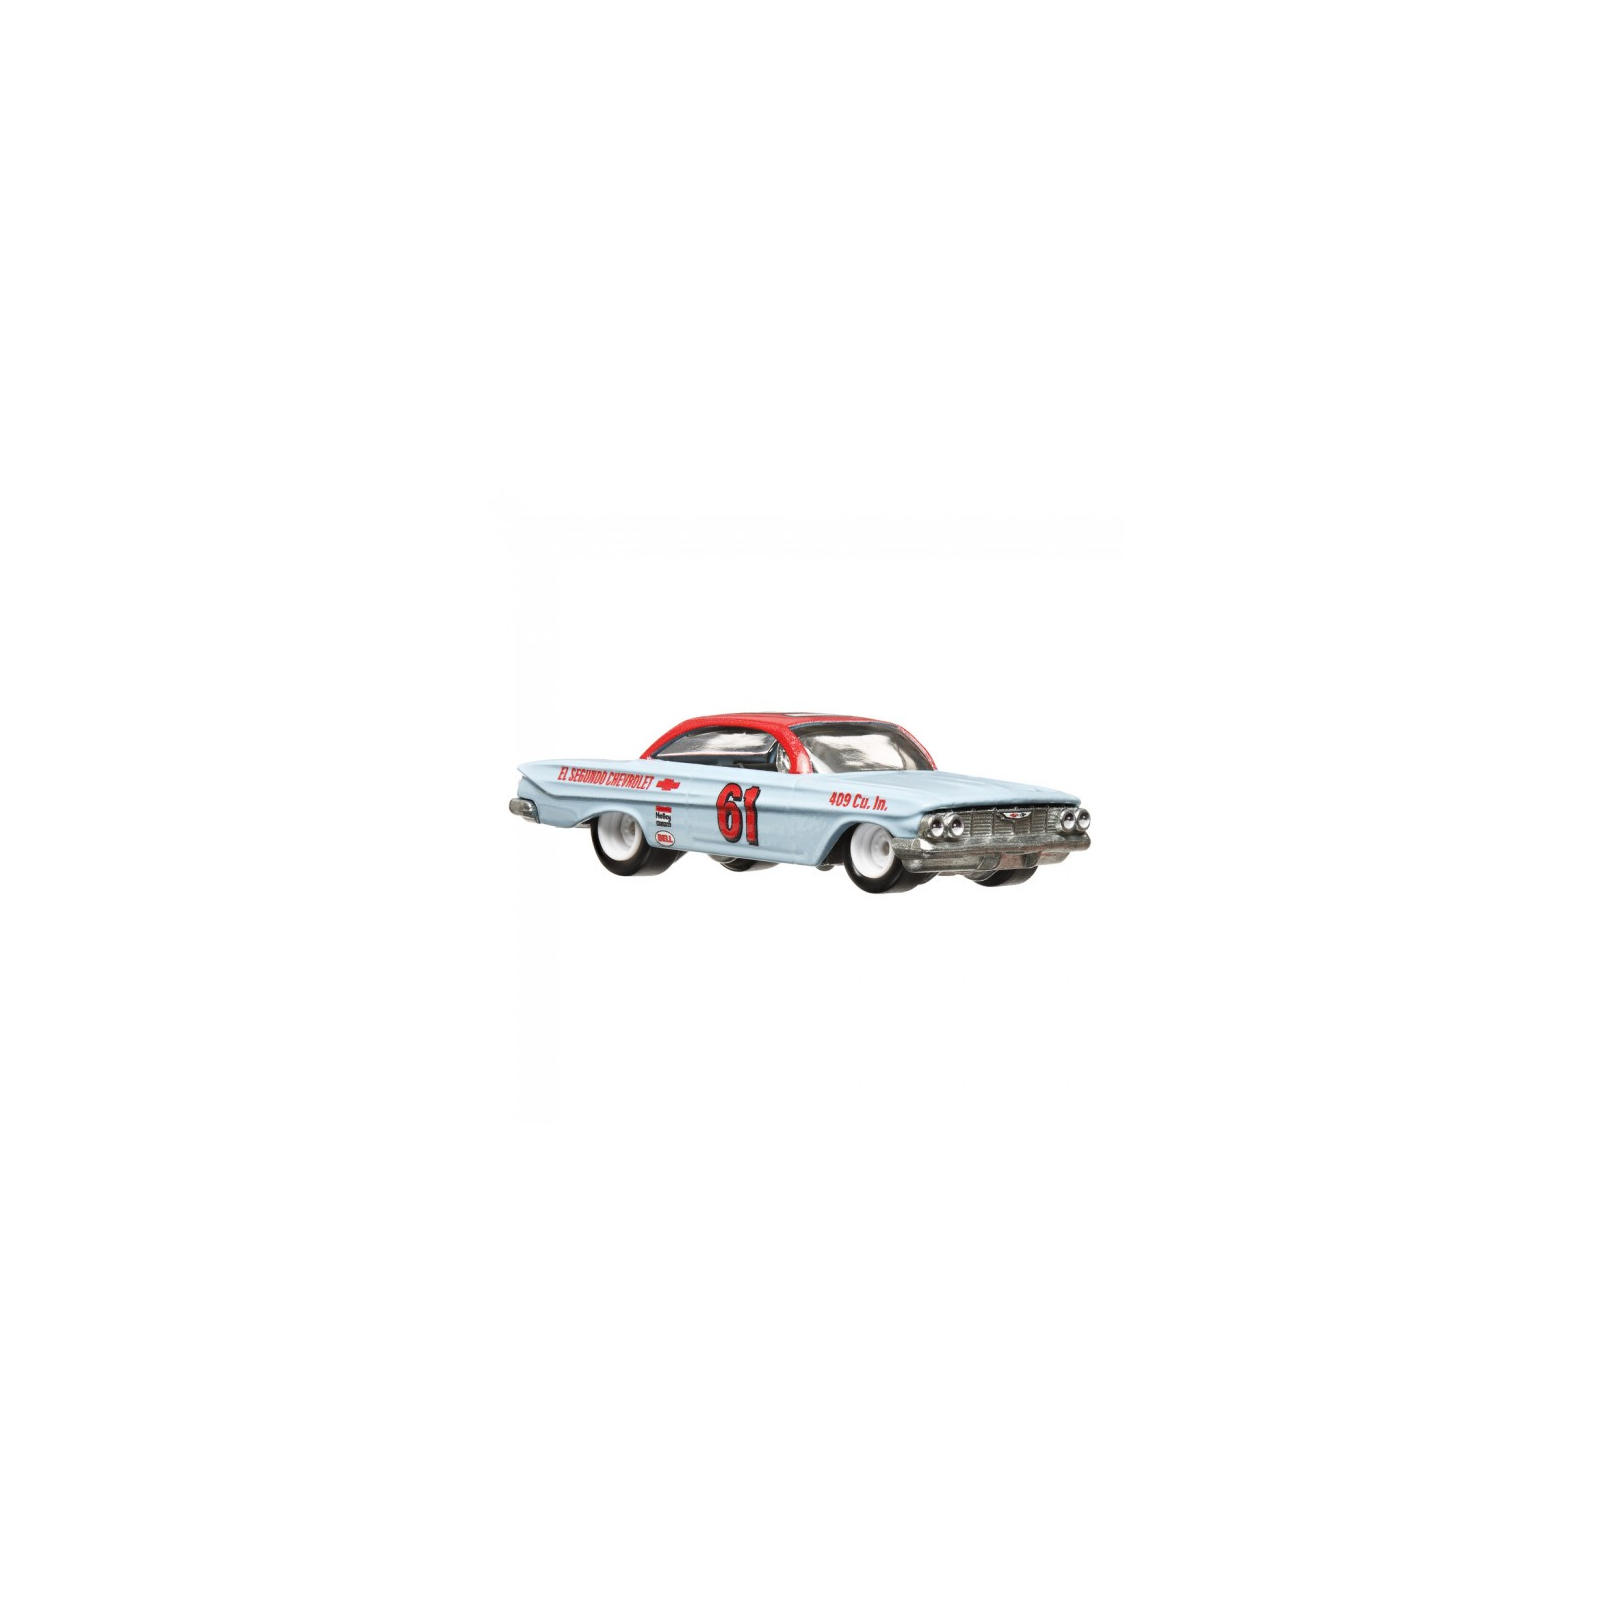 Машина Hot Wheels Коллекционная модель 61 Impala и транспортера 72 Chevy Ramp Truck серии Car Culture (FLF56/HKF40) изображение 3